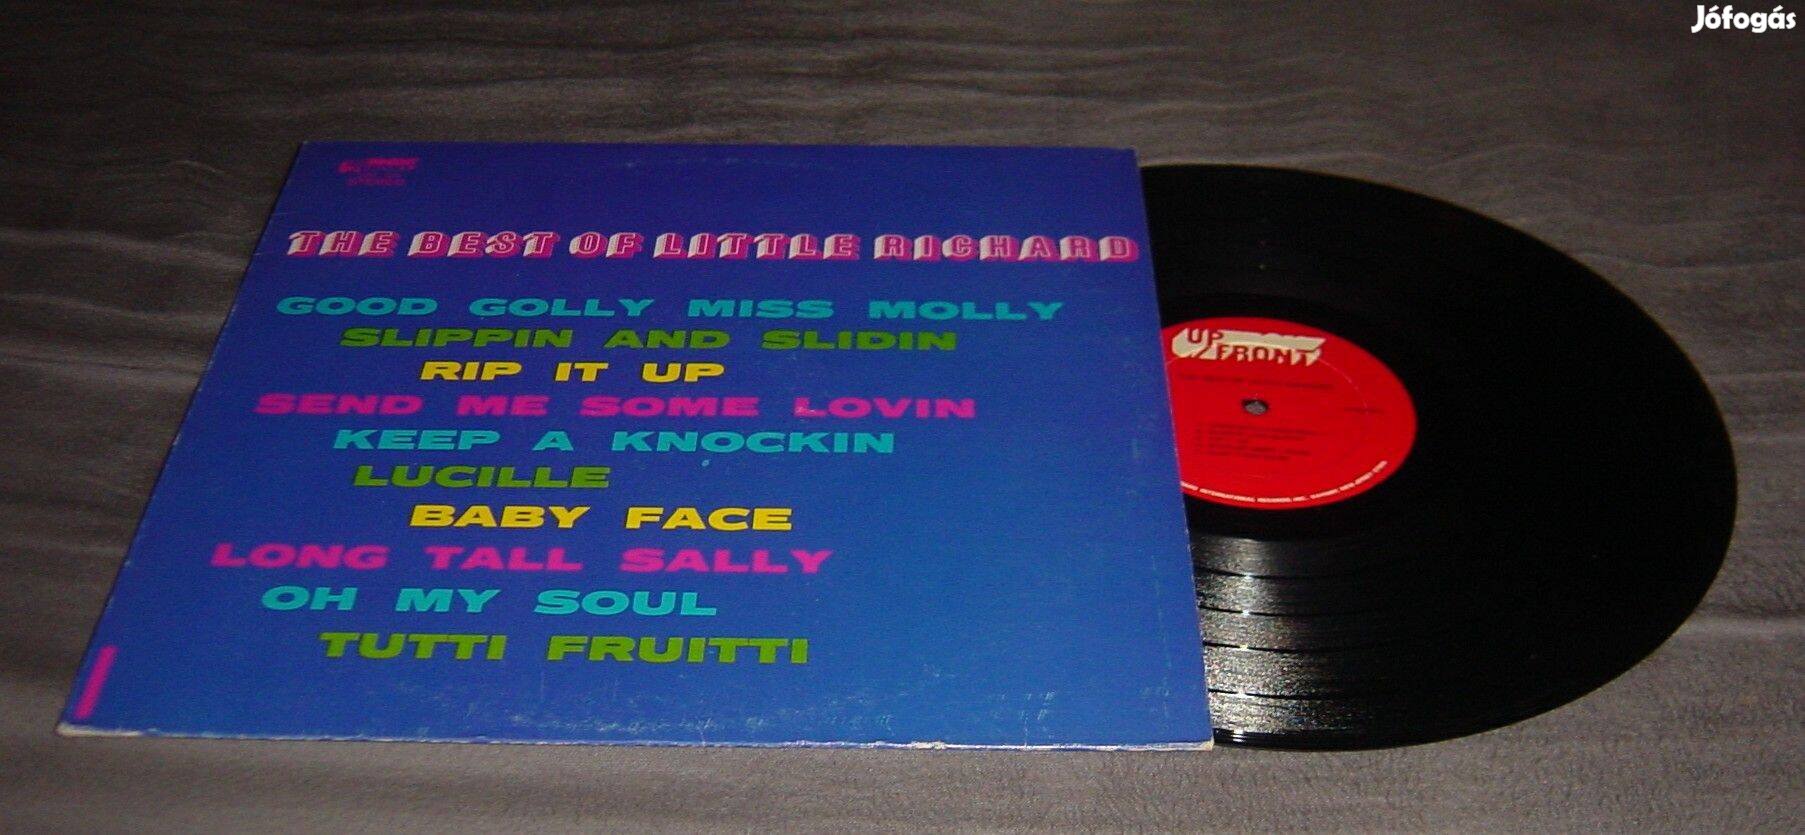 Bakelit nagylemez - The best of Little Richard